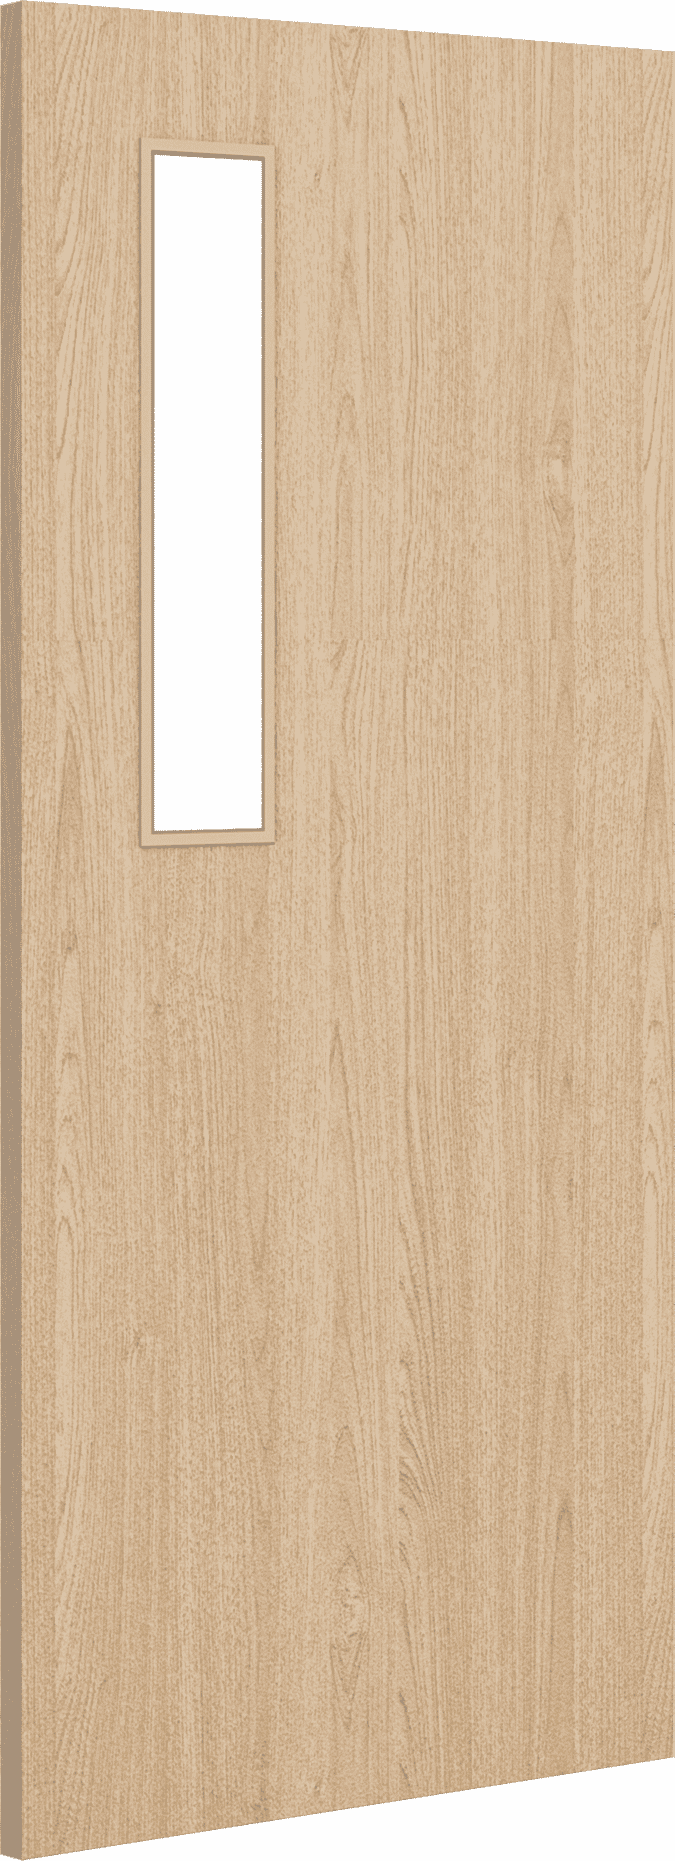 2040mm x 926mm x 54mm Architectural Oak 08 Clear Glazed - Prefinished FD60 Fire Door Blank